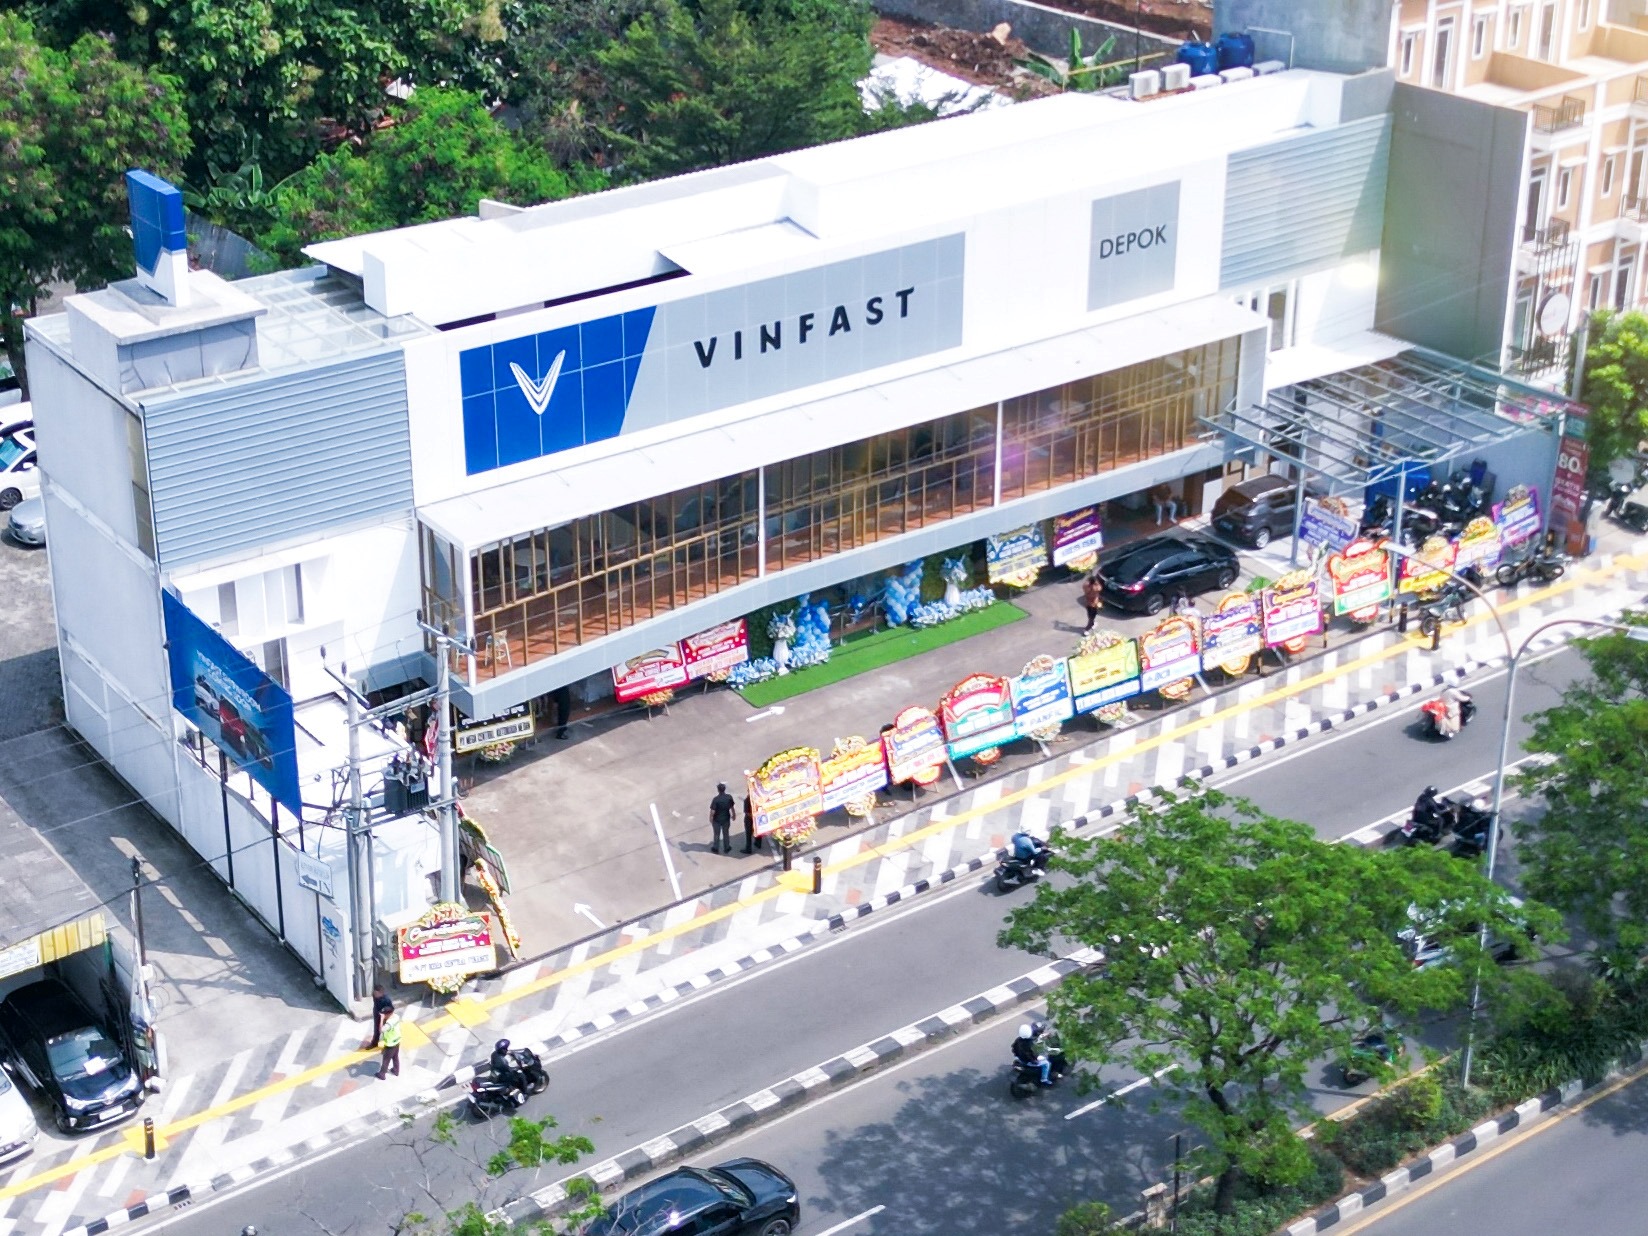 Cửa hàng đại lý VinFast đầu tiên tại thành phố Depok, Indonesia.